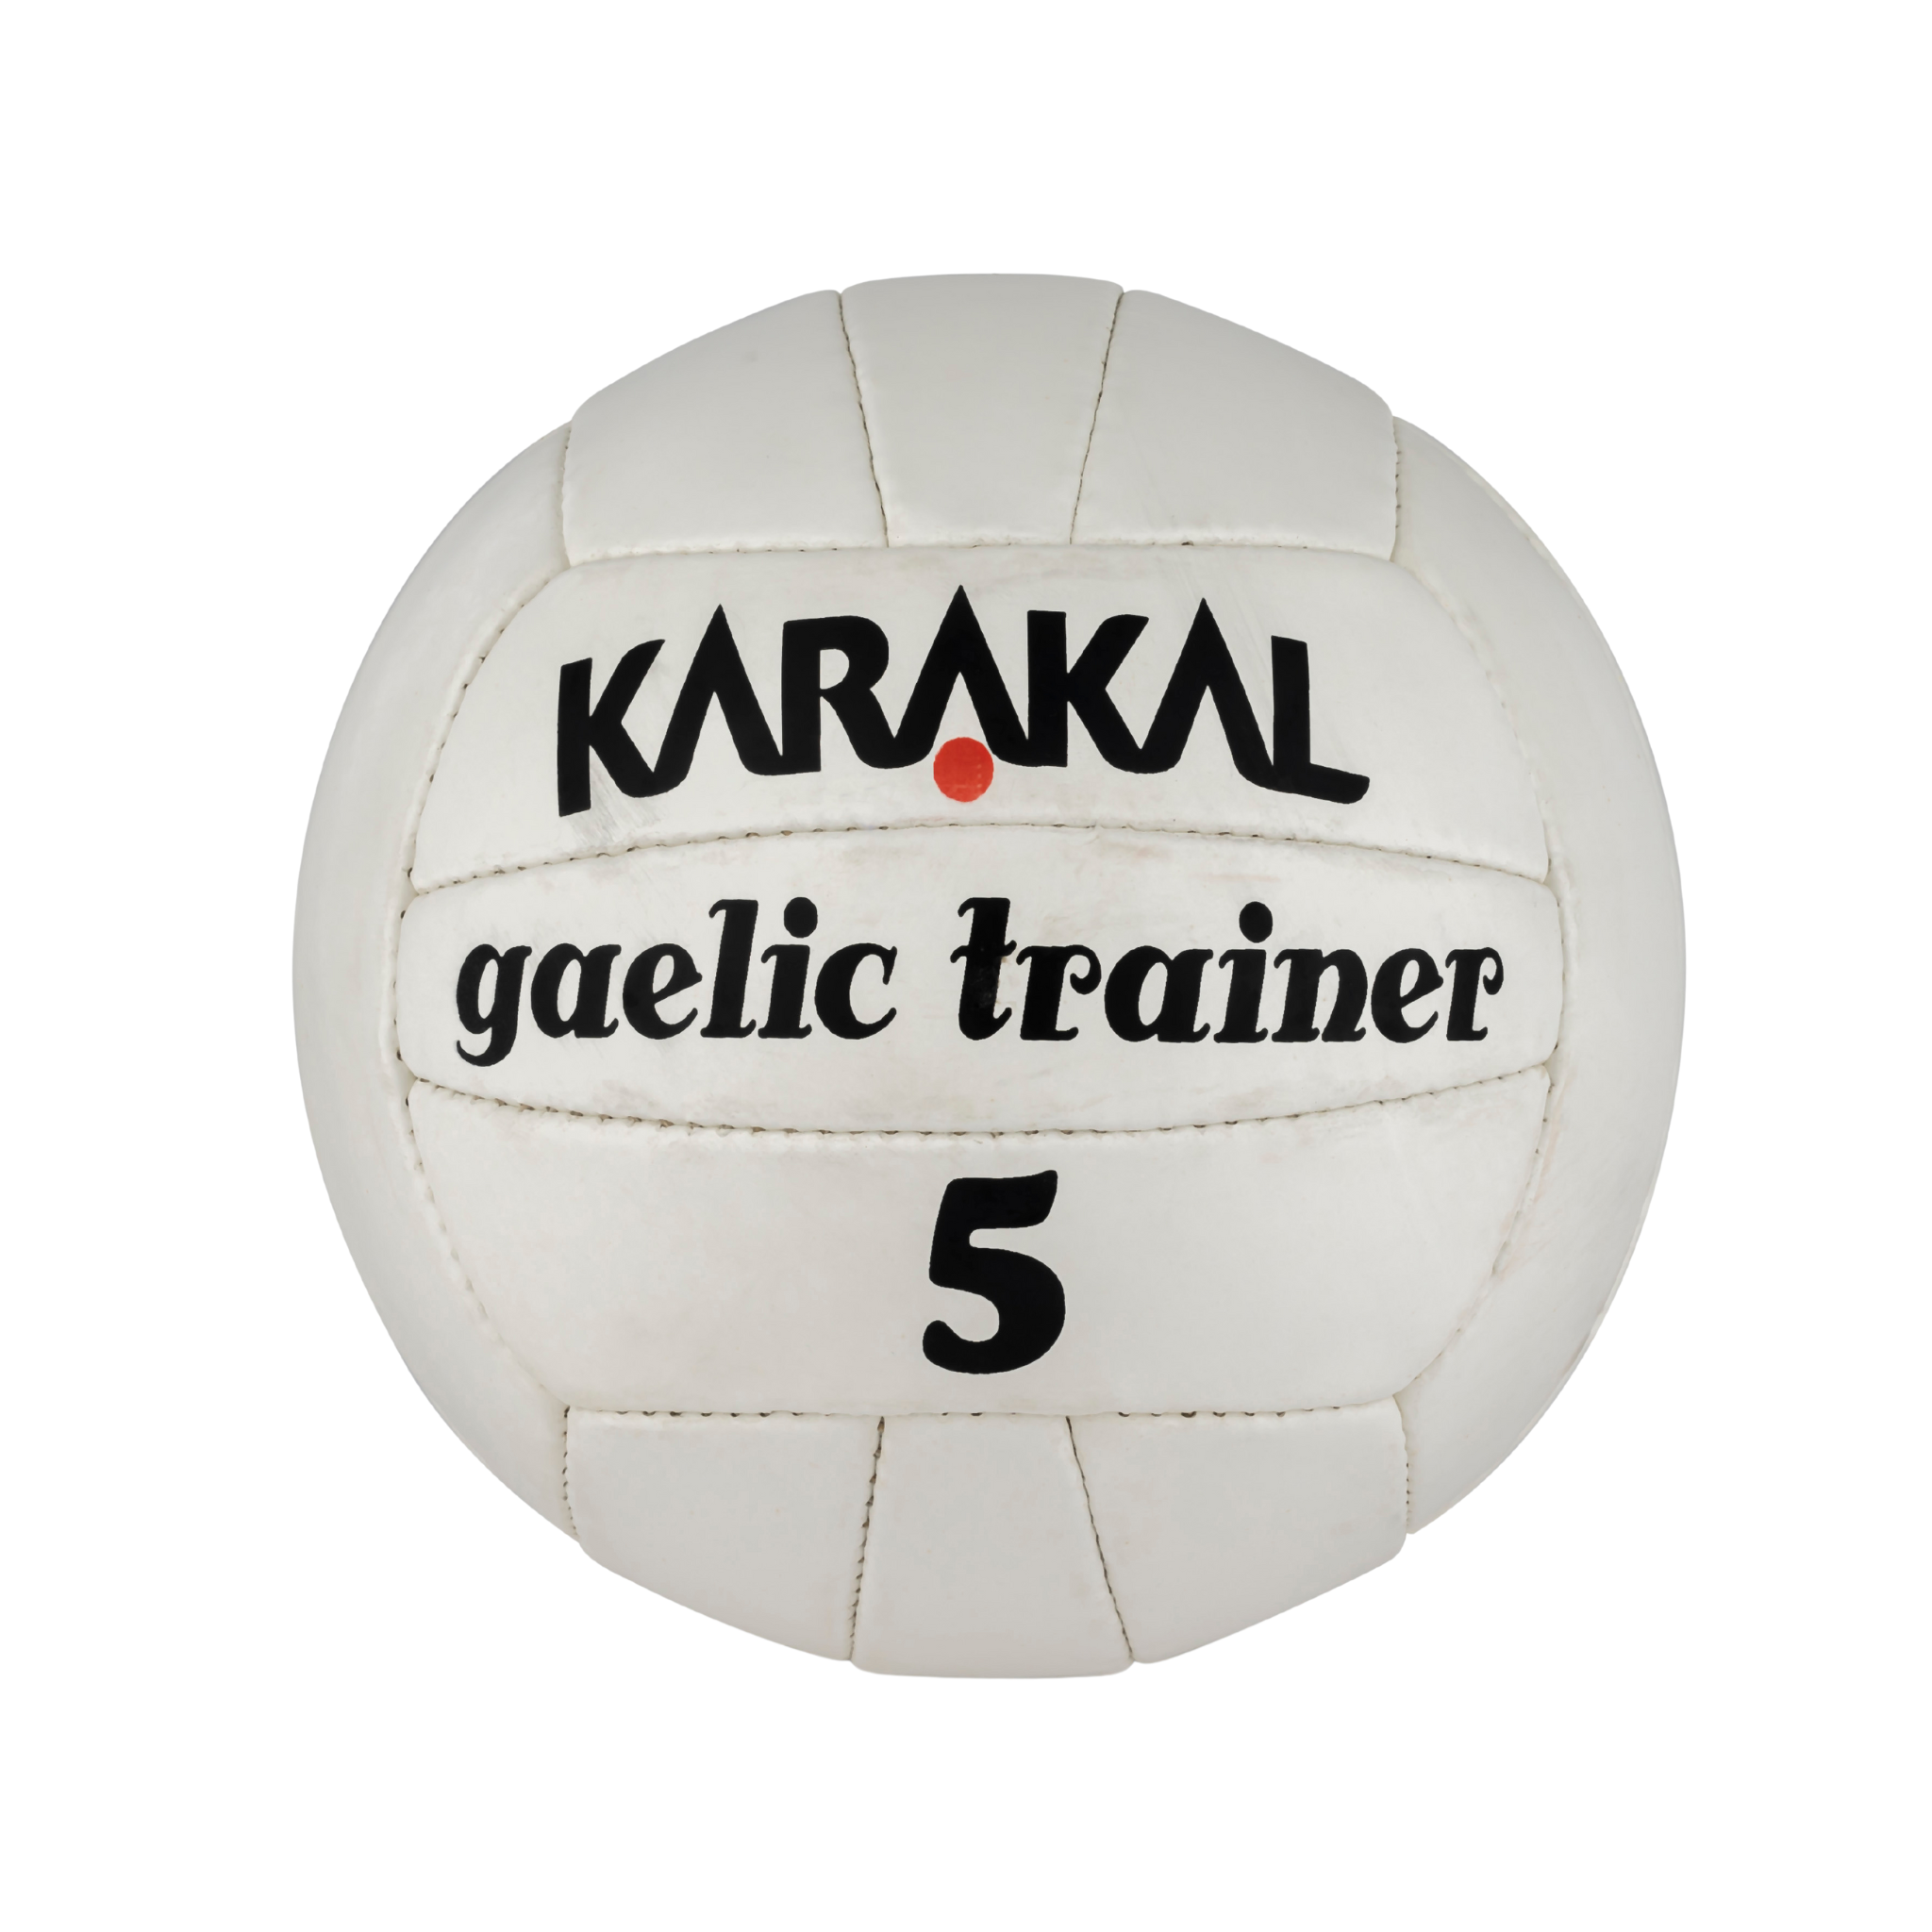 Karakal Gaelic Trainer Ball Size 5 - 10 Pack